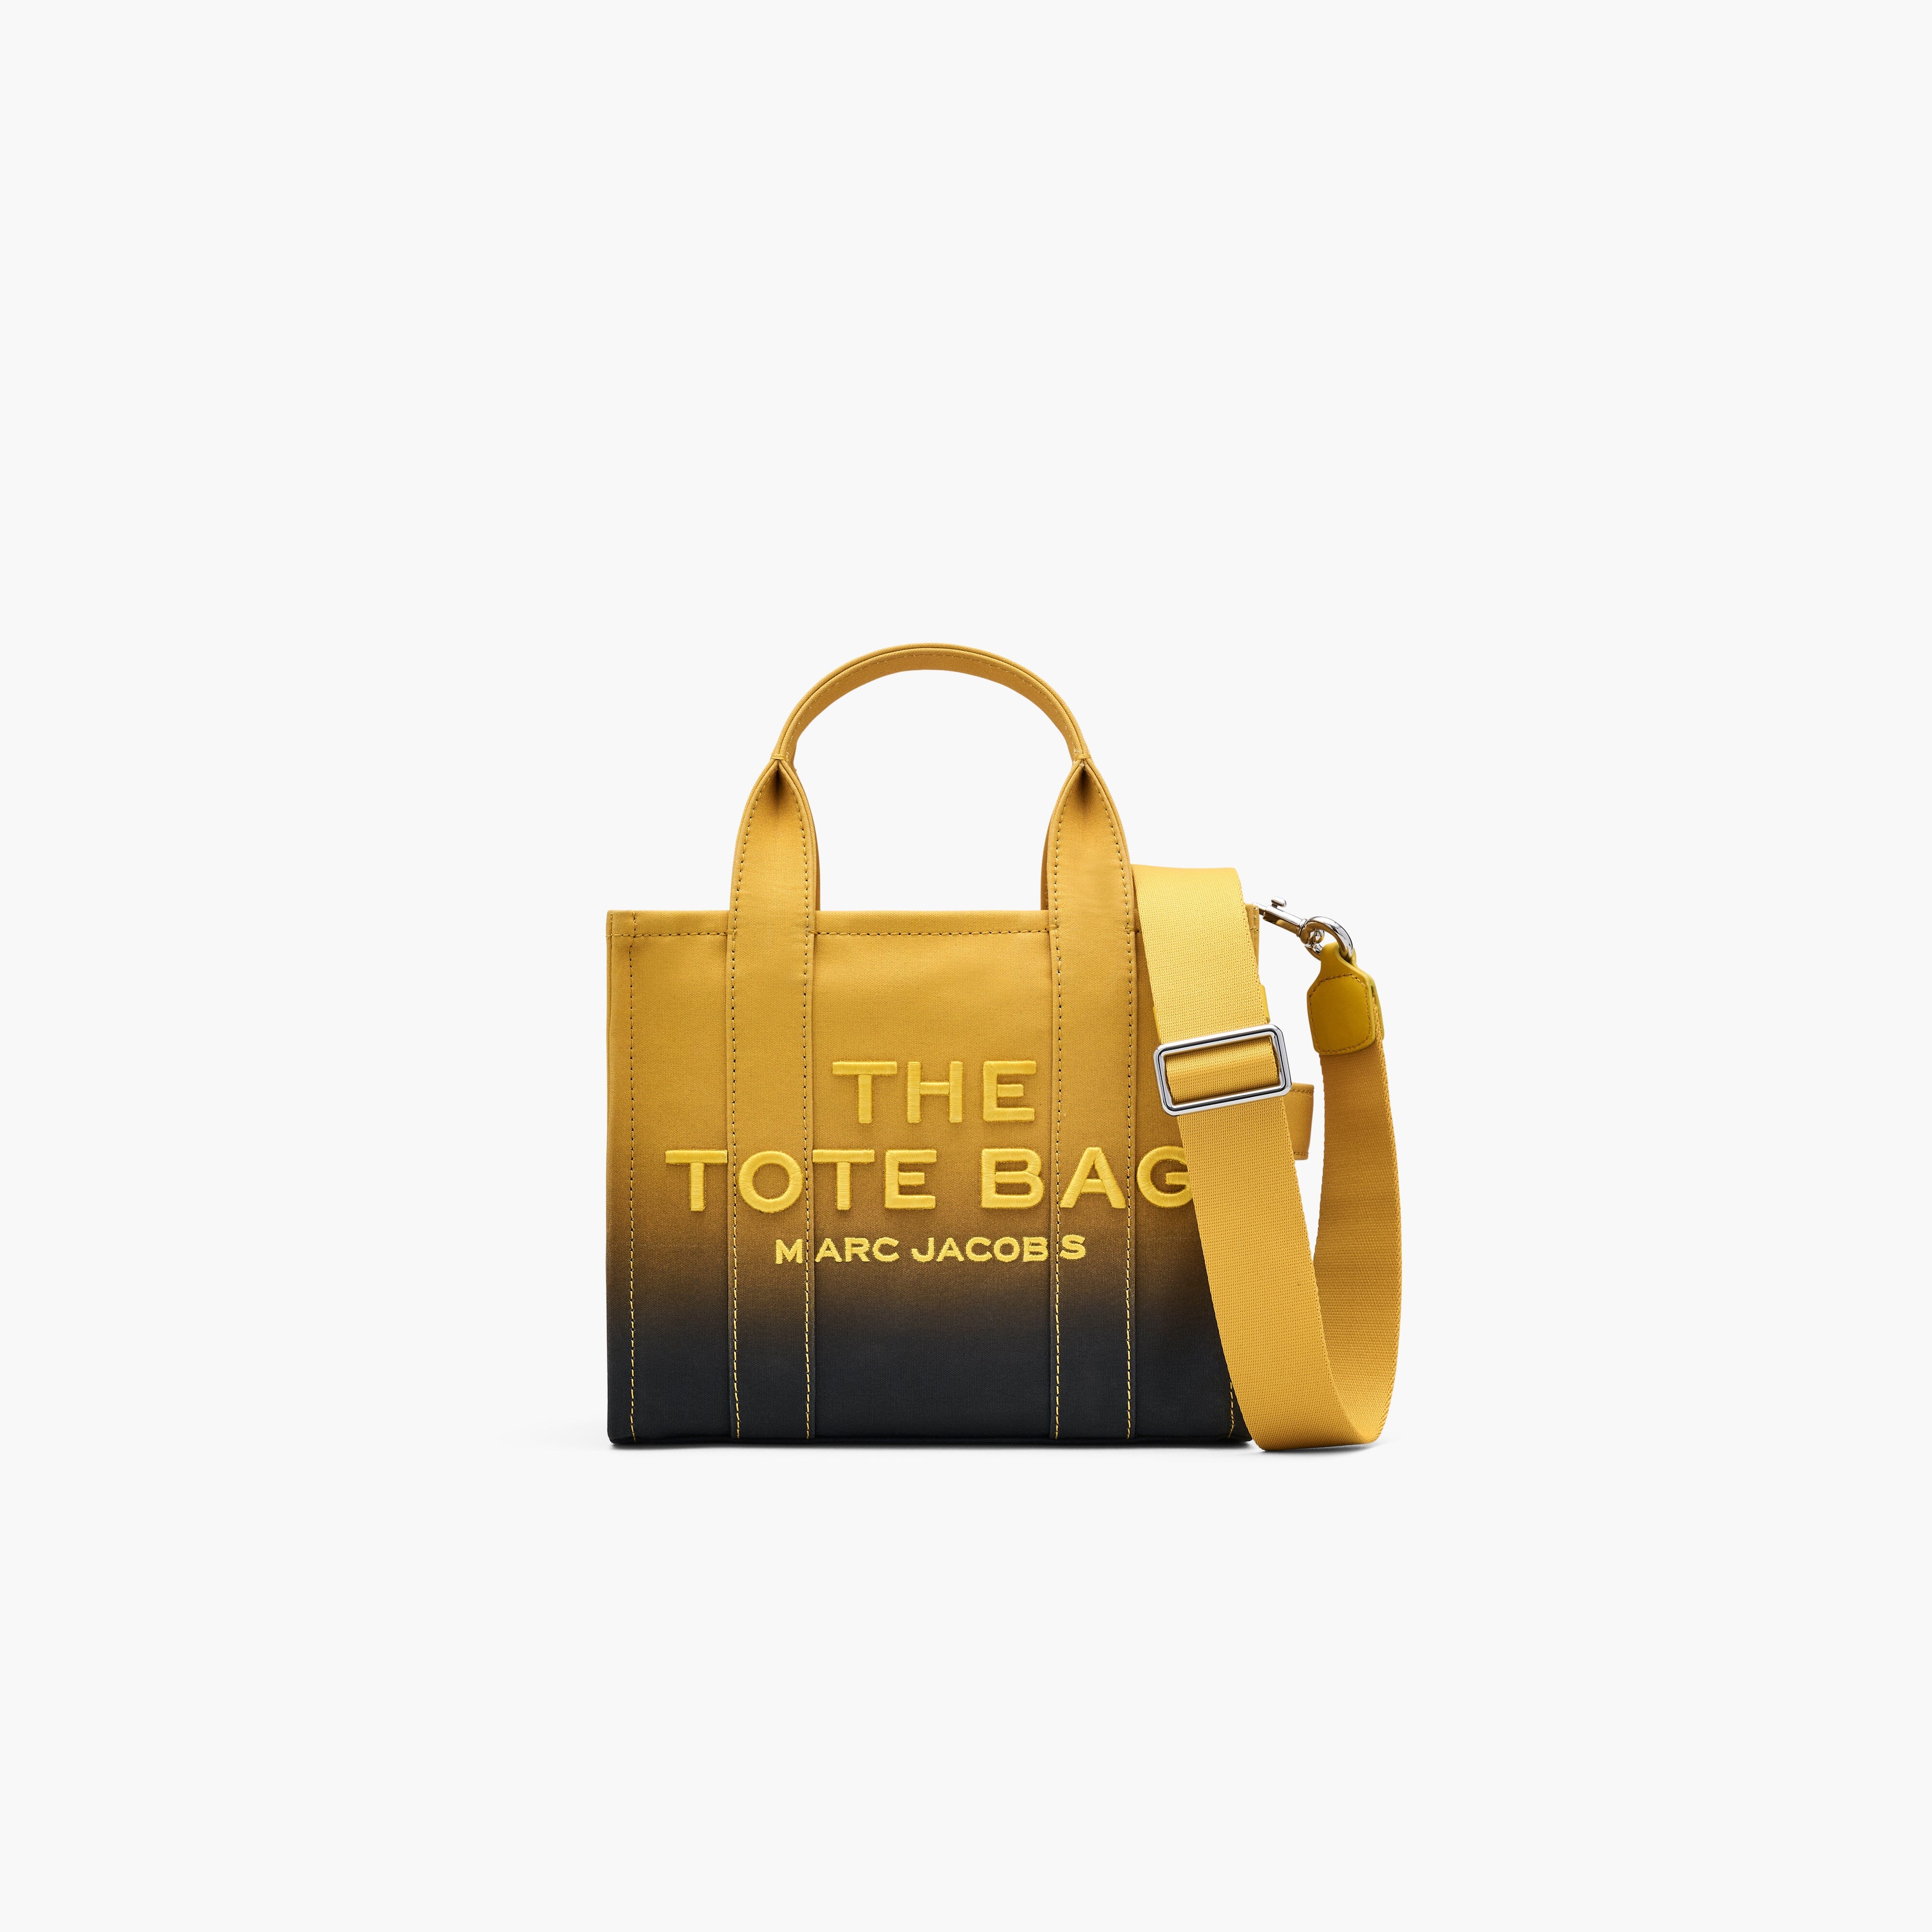 MARC JACOBS - The Small Tote Bag - 2P4HTT051H03-015 - Nero/Giallo Borse Marc Jacobs 